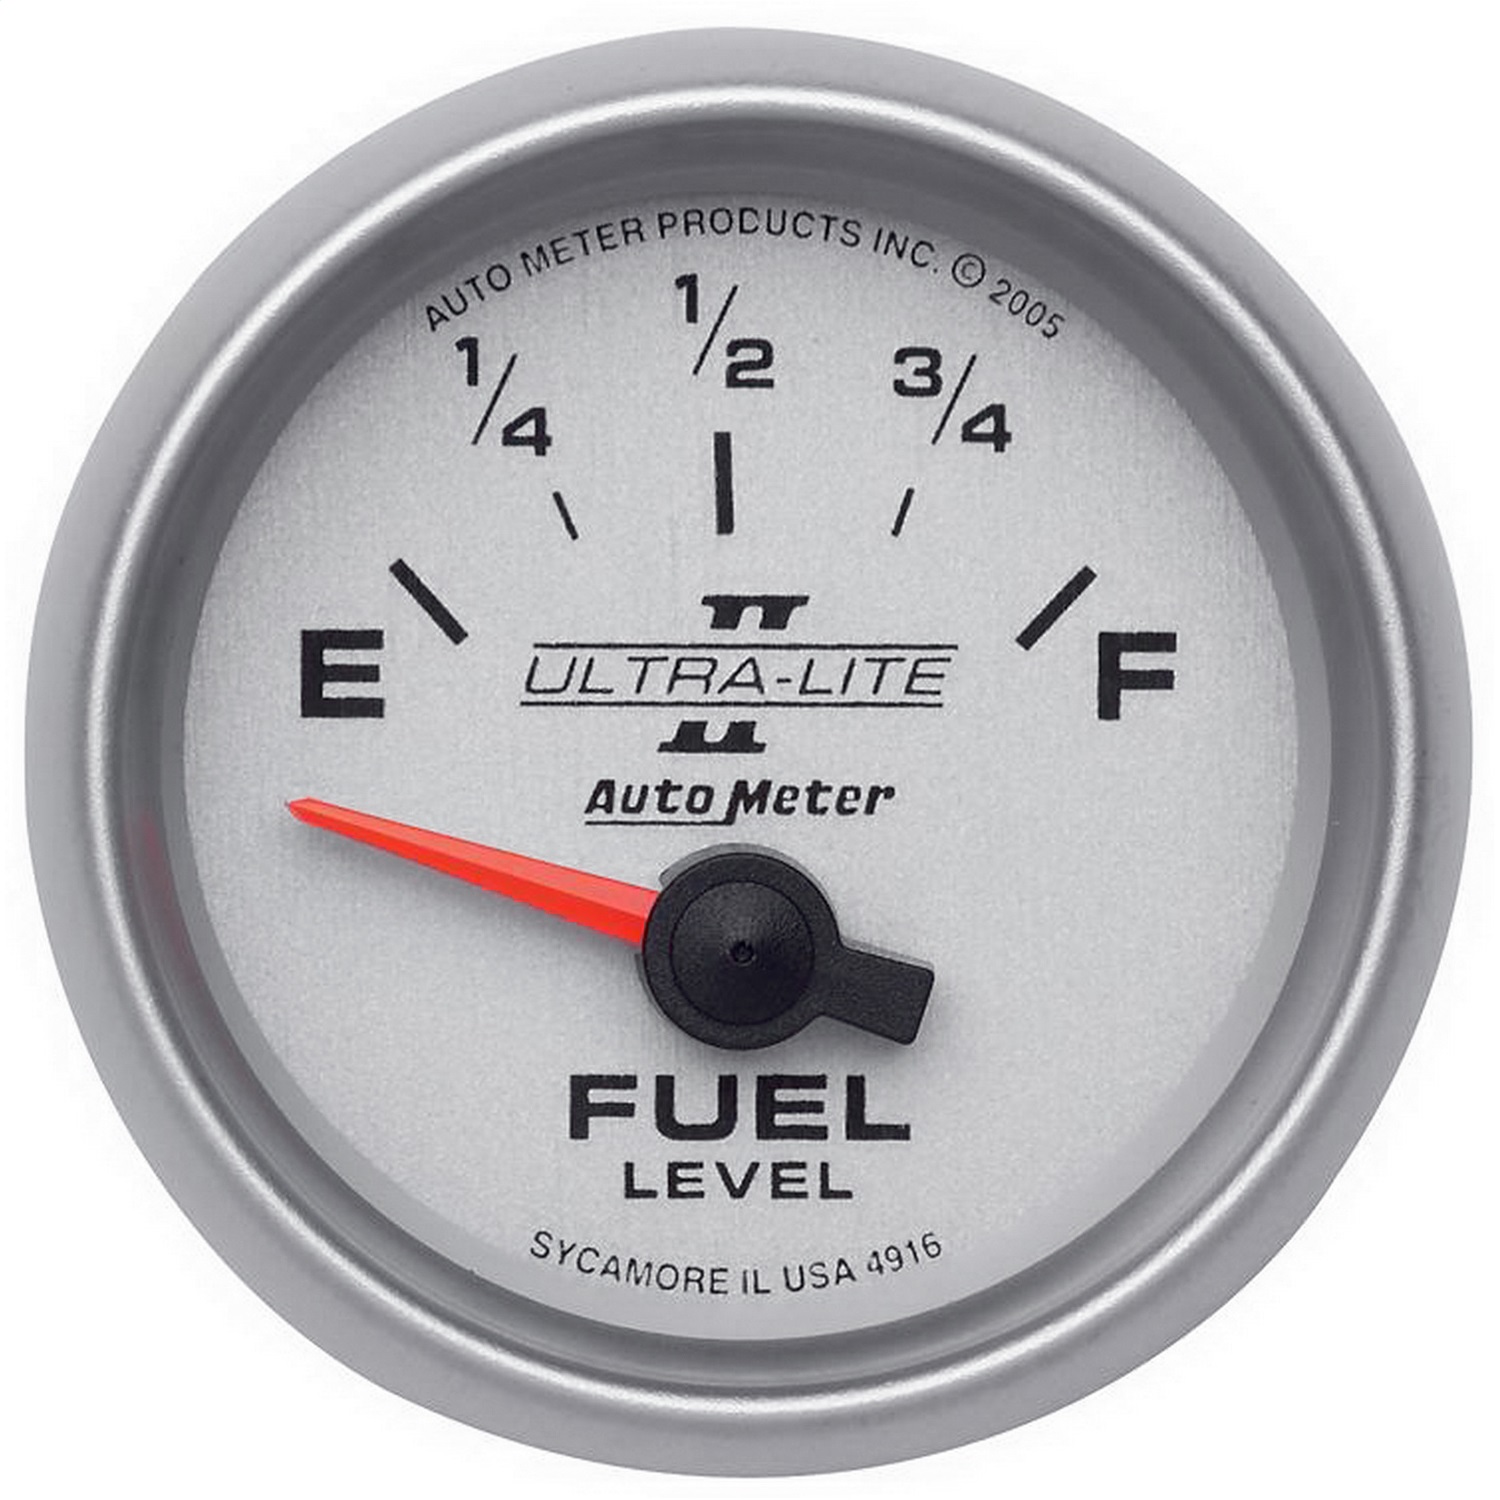 Auto Meter Auto Meter 4916 Ultra-Lite II; Electric Fuel Level Gauge